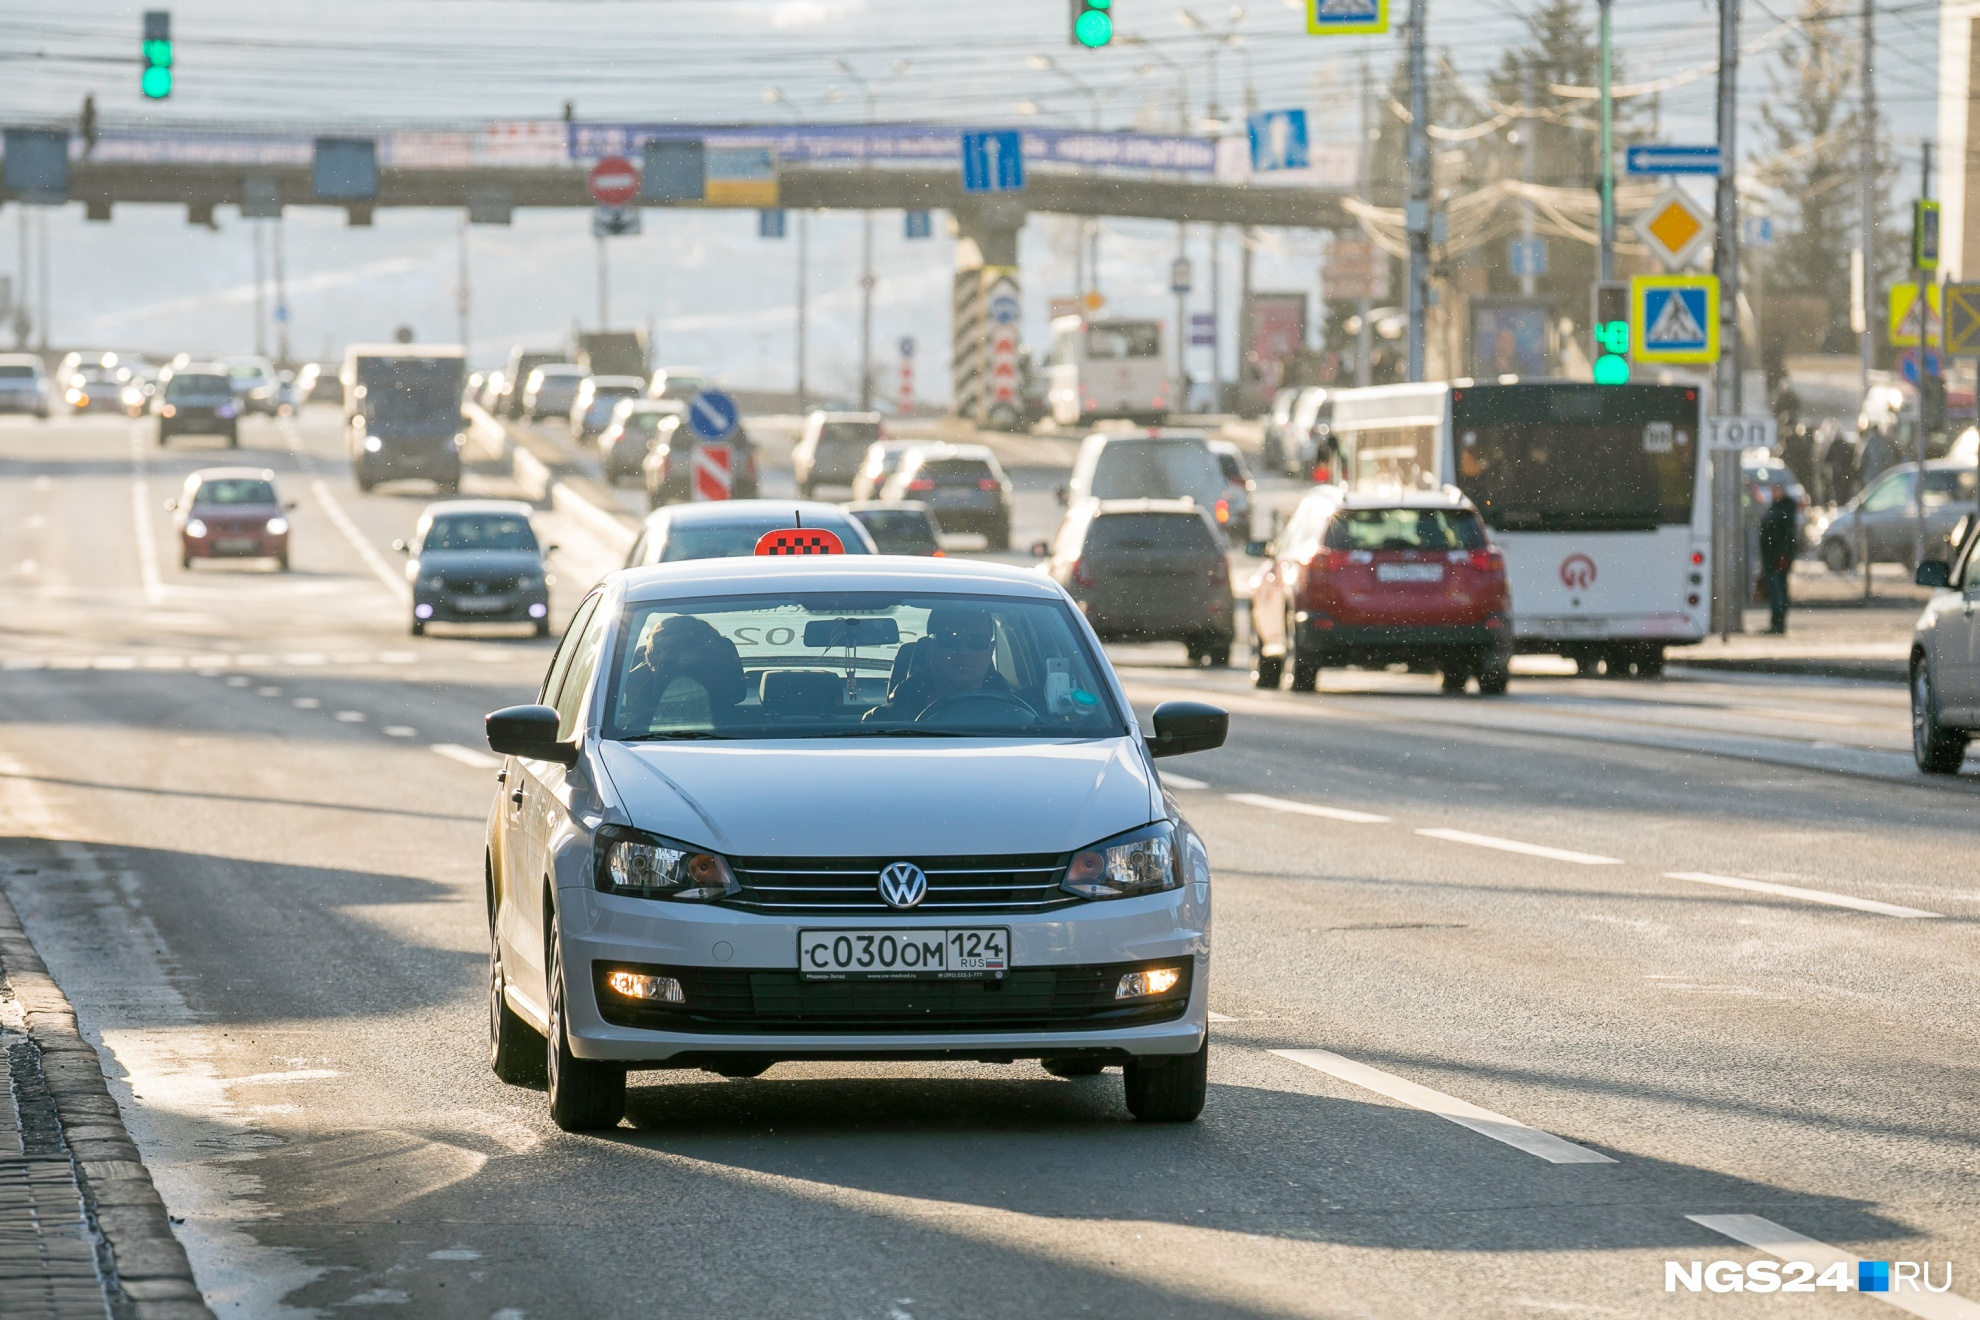 Новый сервис уже набирает водителей в Красноярске